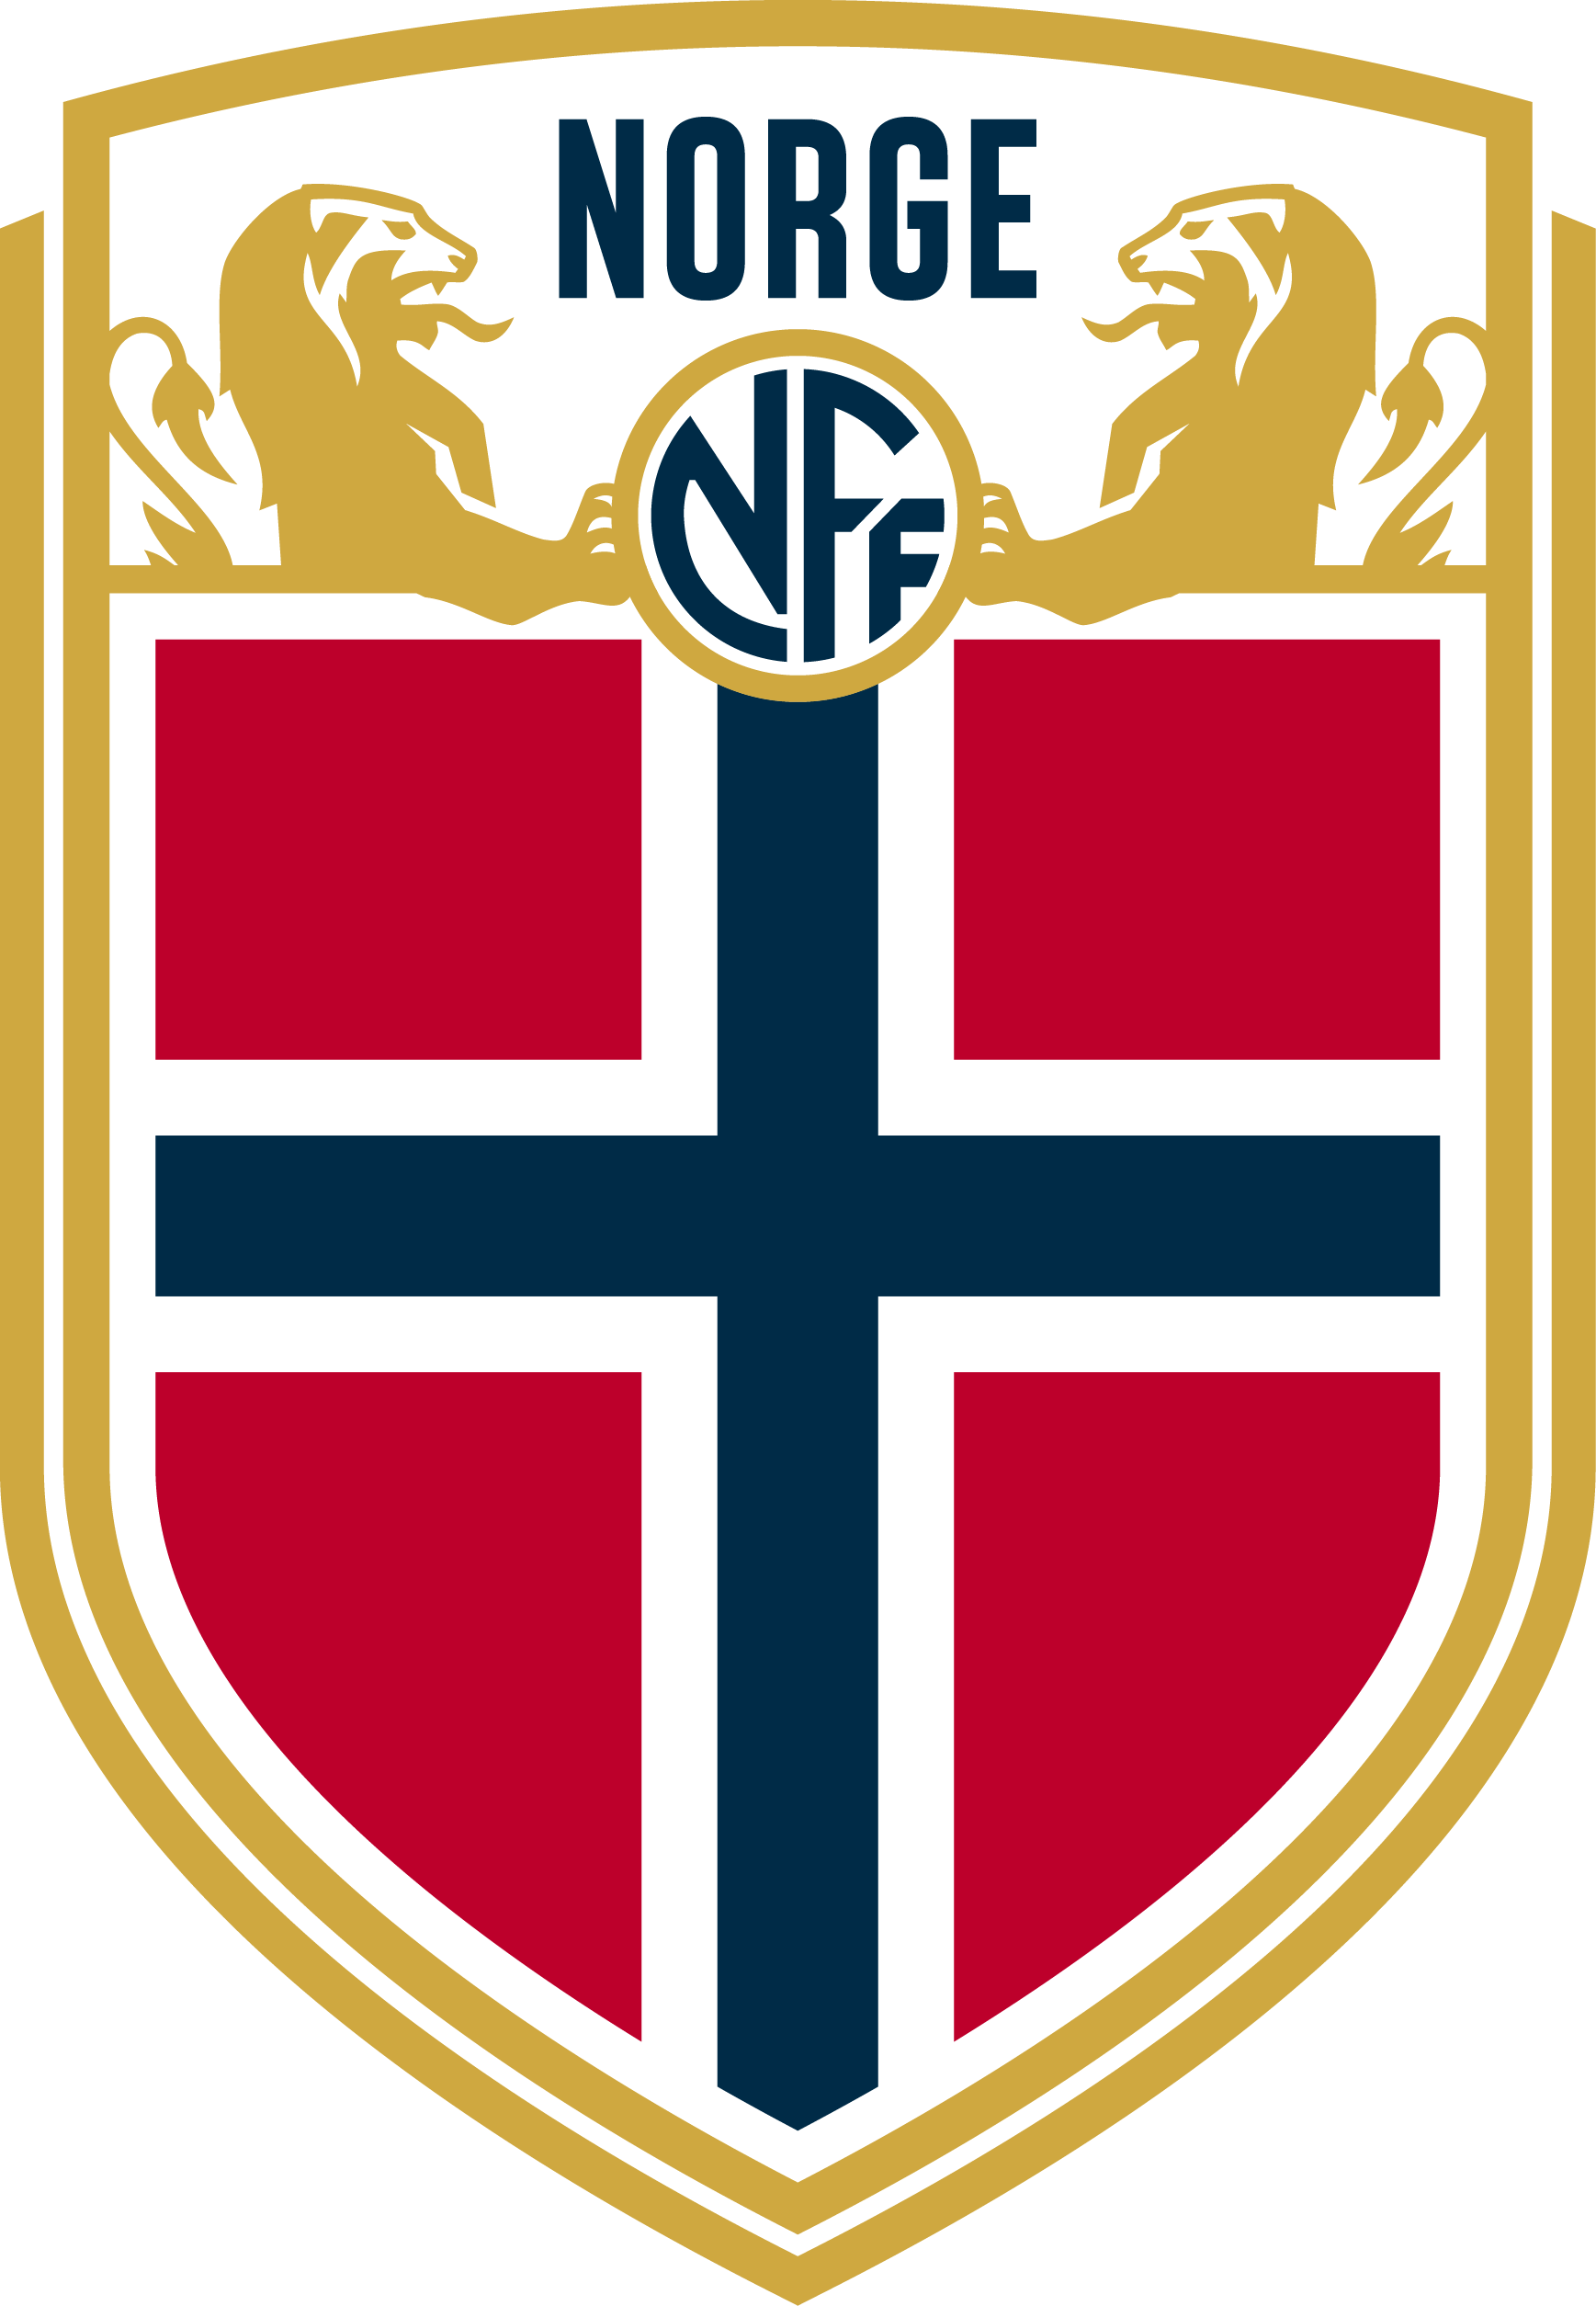 挪威國家隊